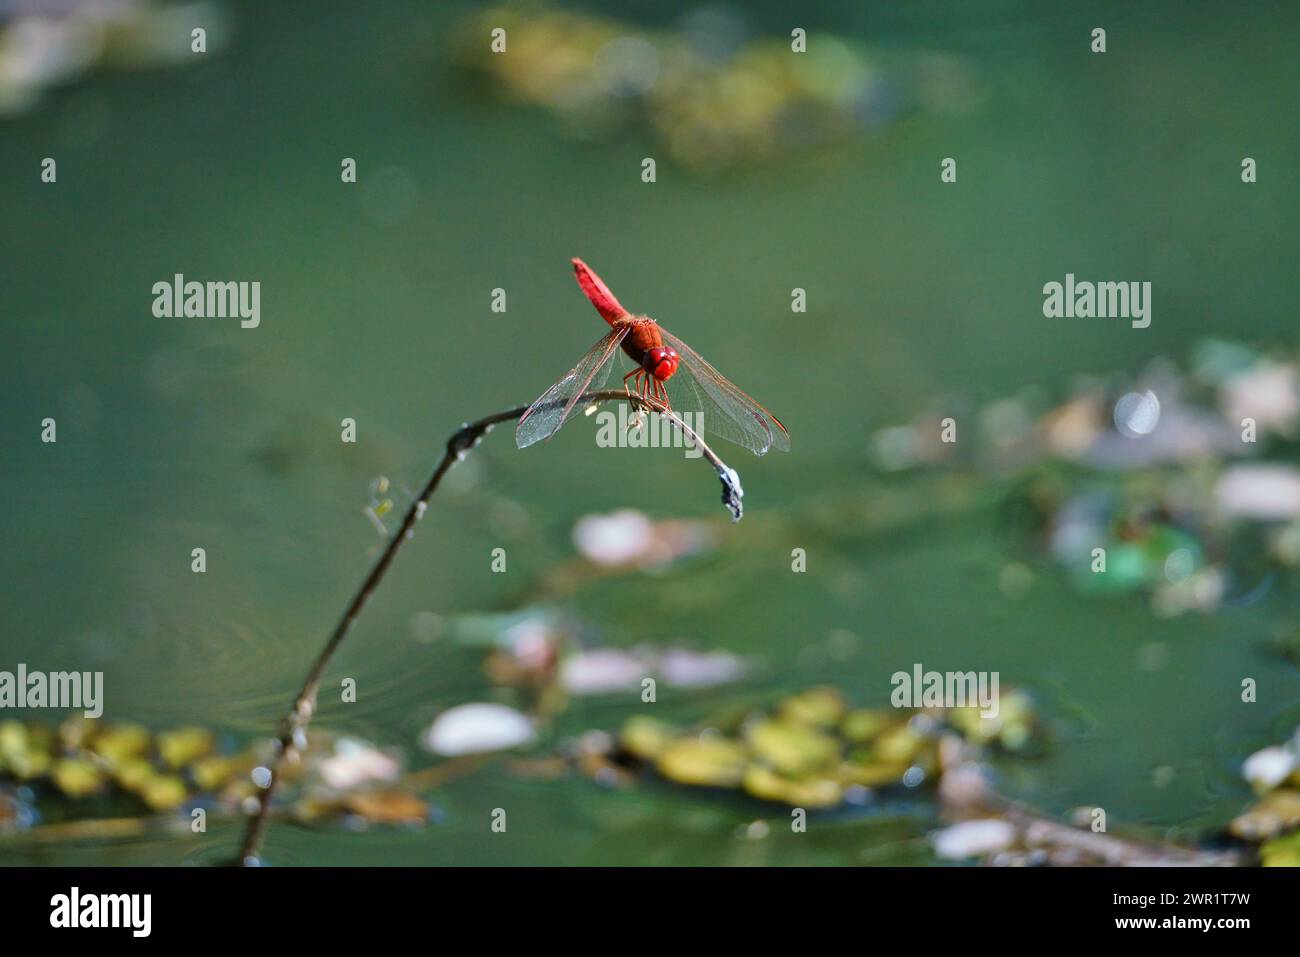 Una libellula rossa seduta su un ramo di canne sopra una piscina di acqua ferma con vegetazione sommersa Foto Stock